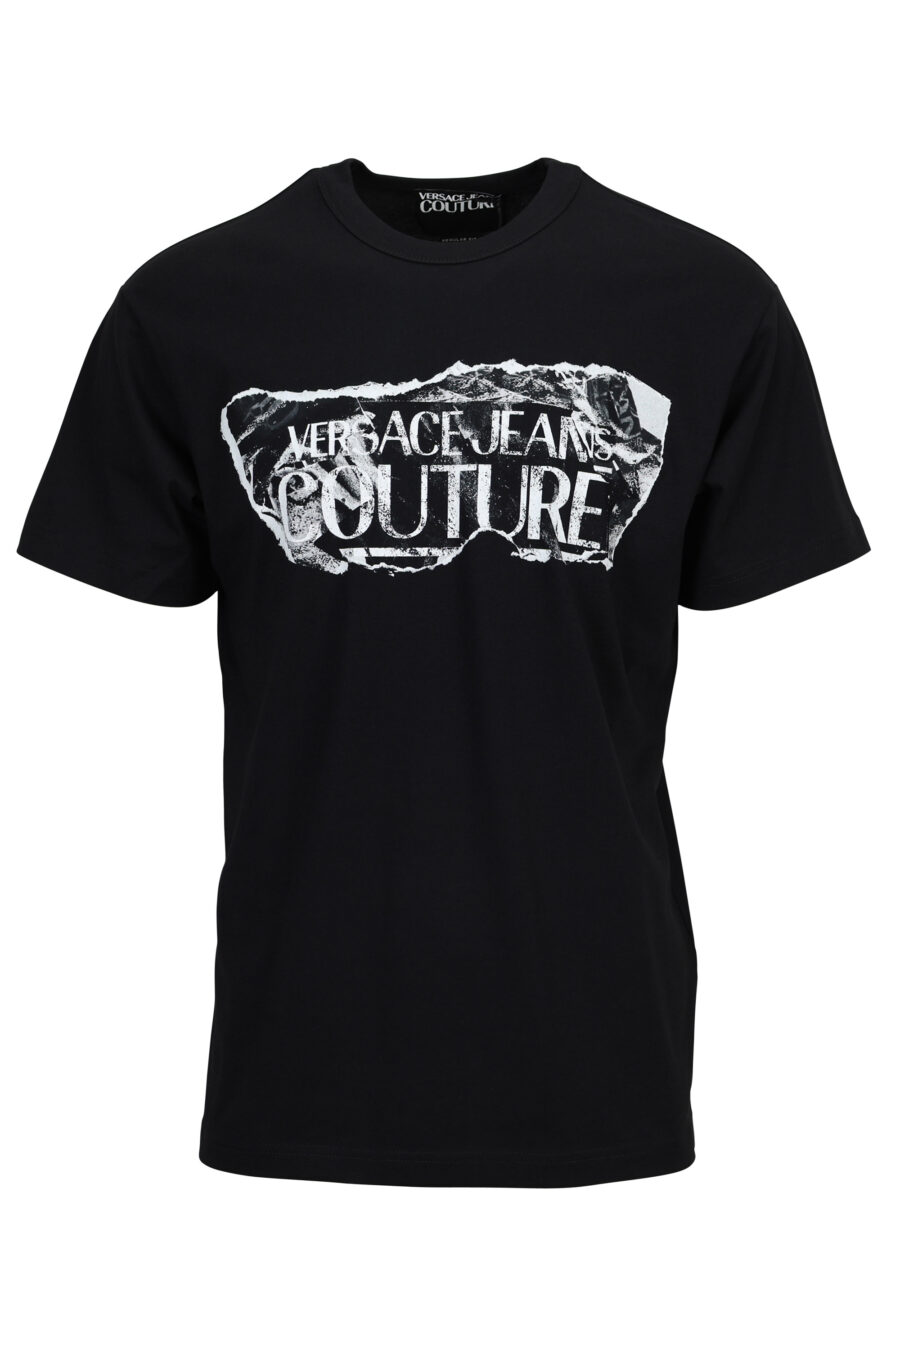 Schwarzes T-Shirt mit zerrissenem Barock-Maxilogo - 8052019603170